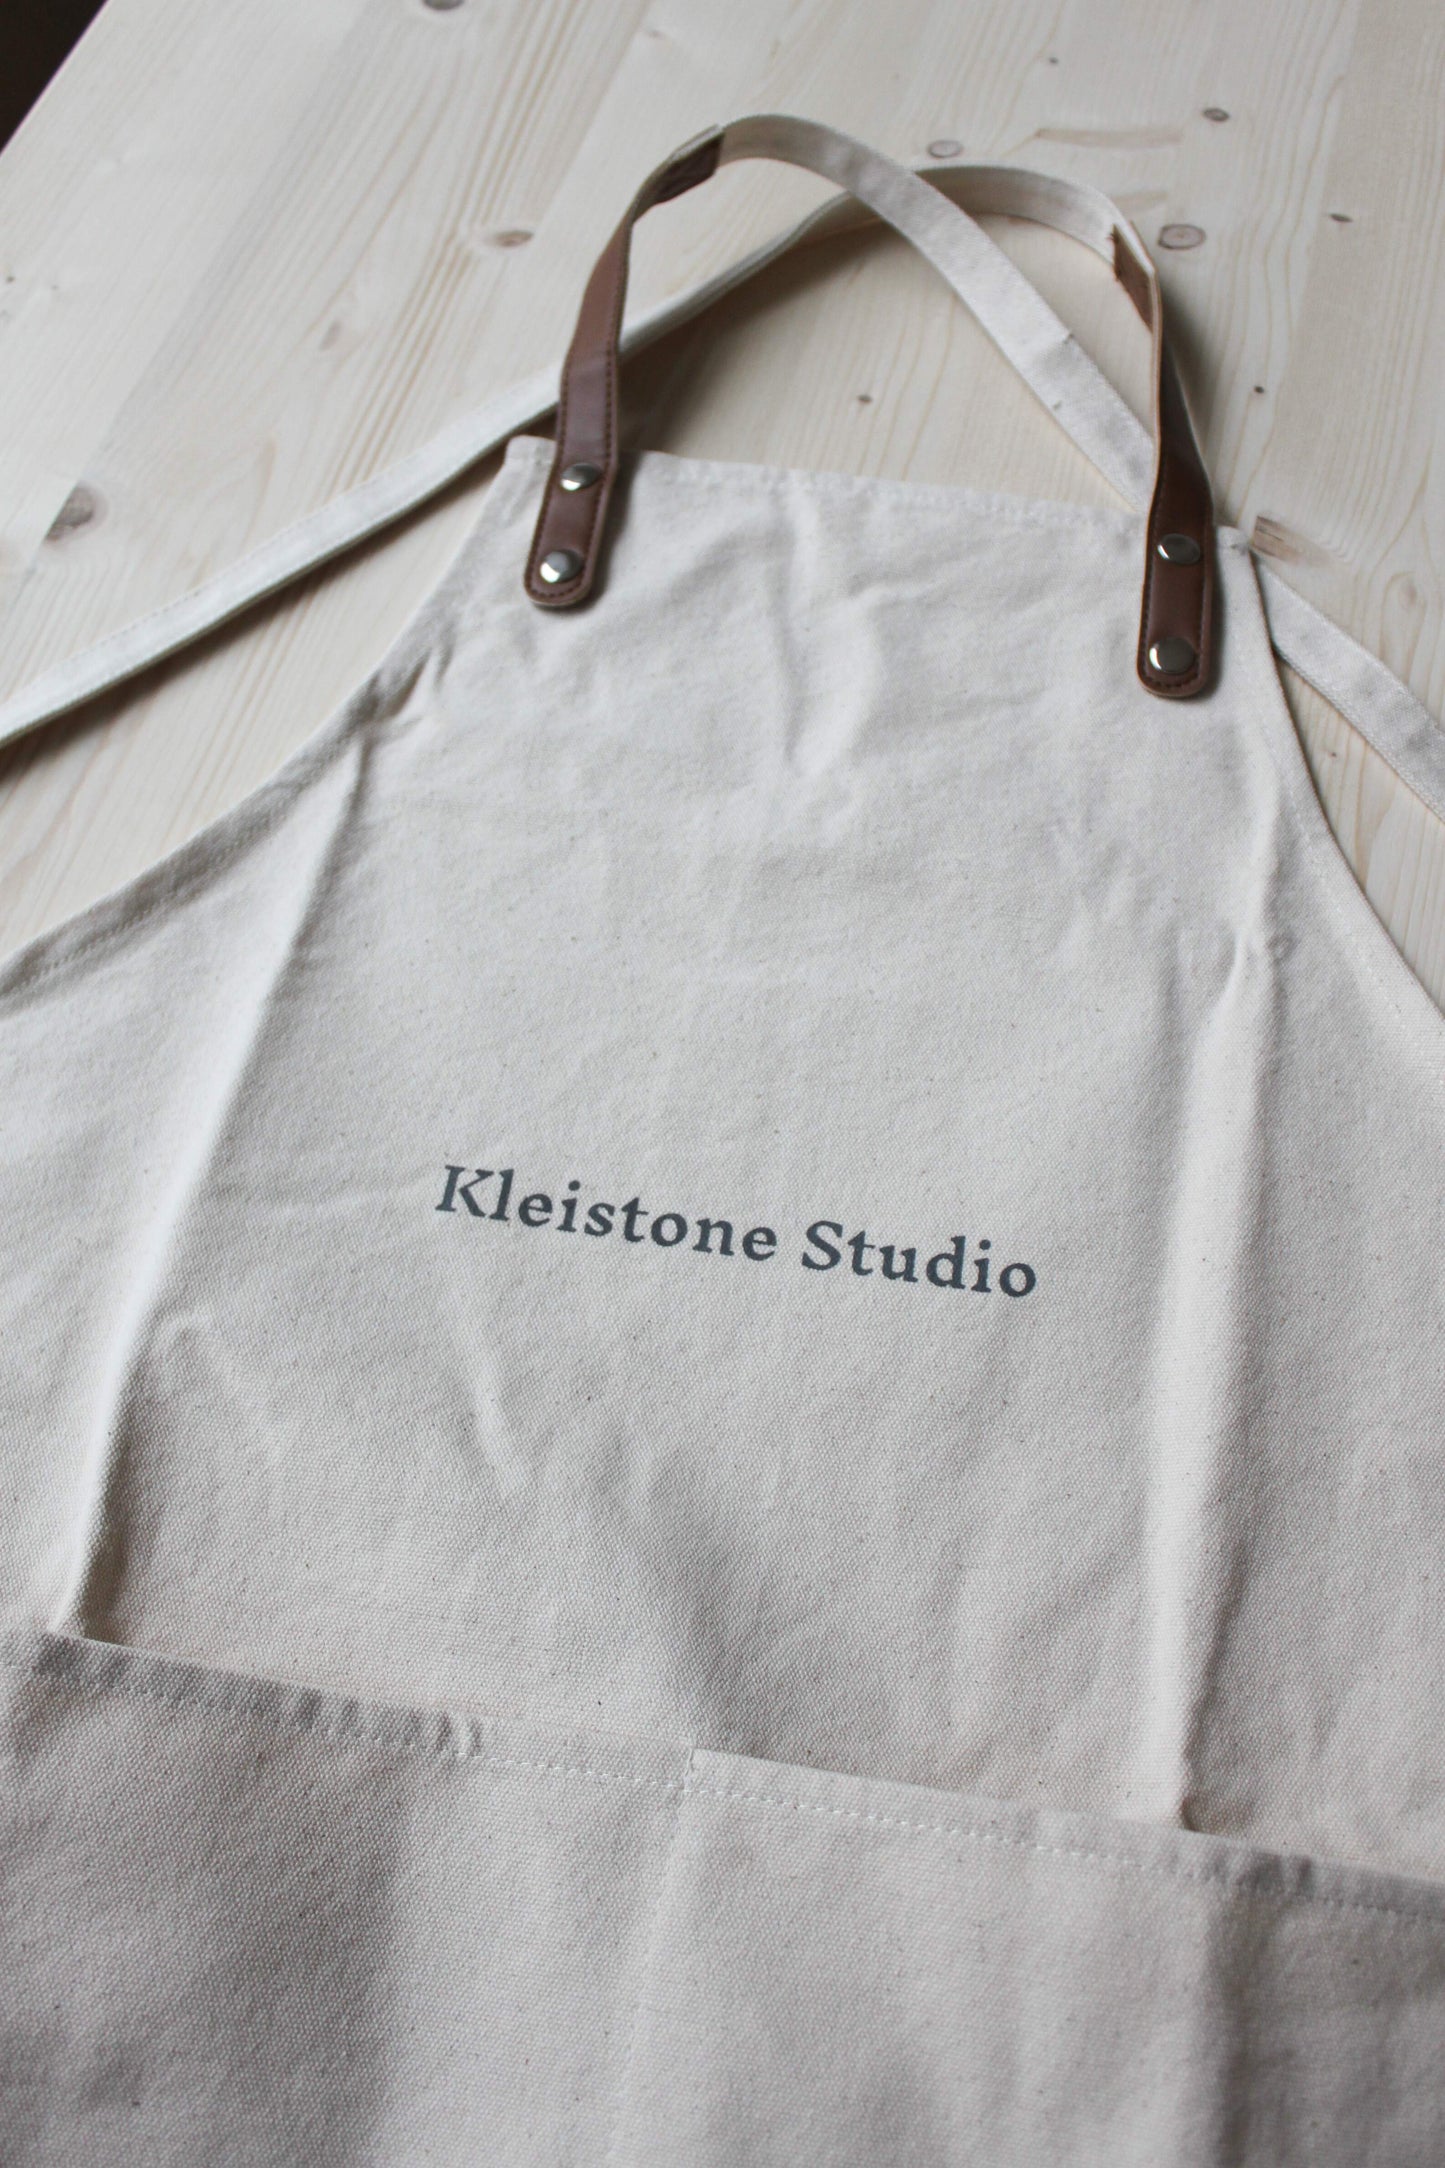 Kleistone Studio Apron